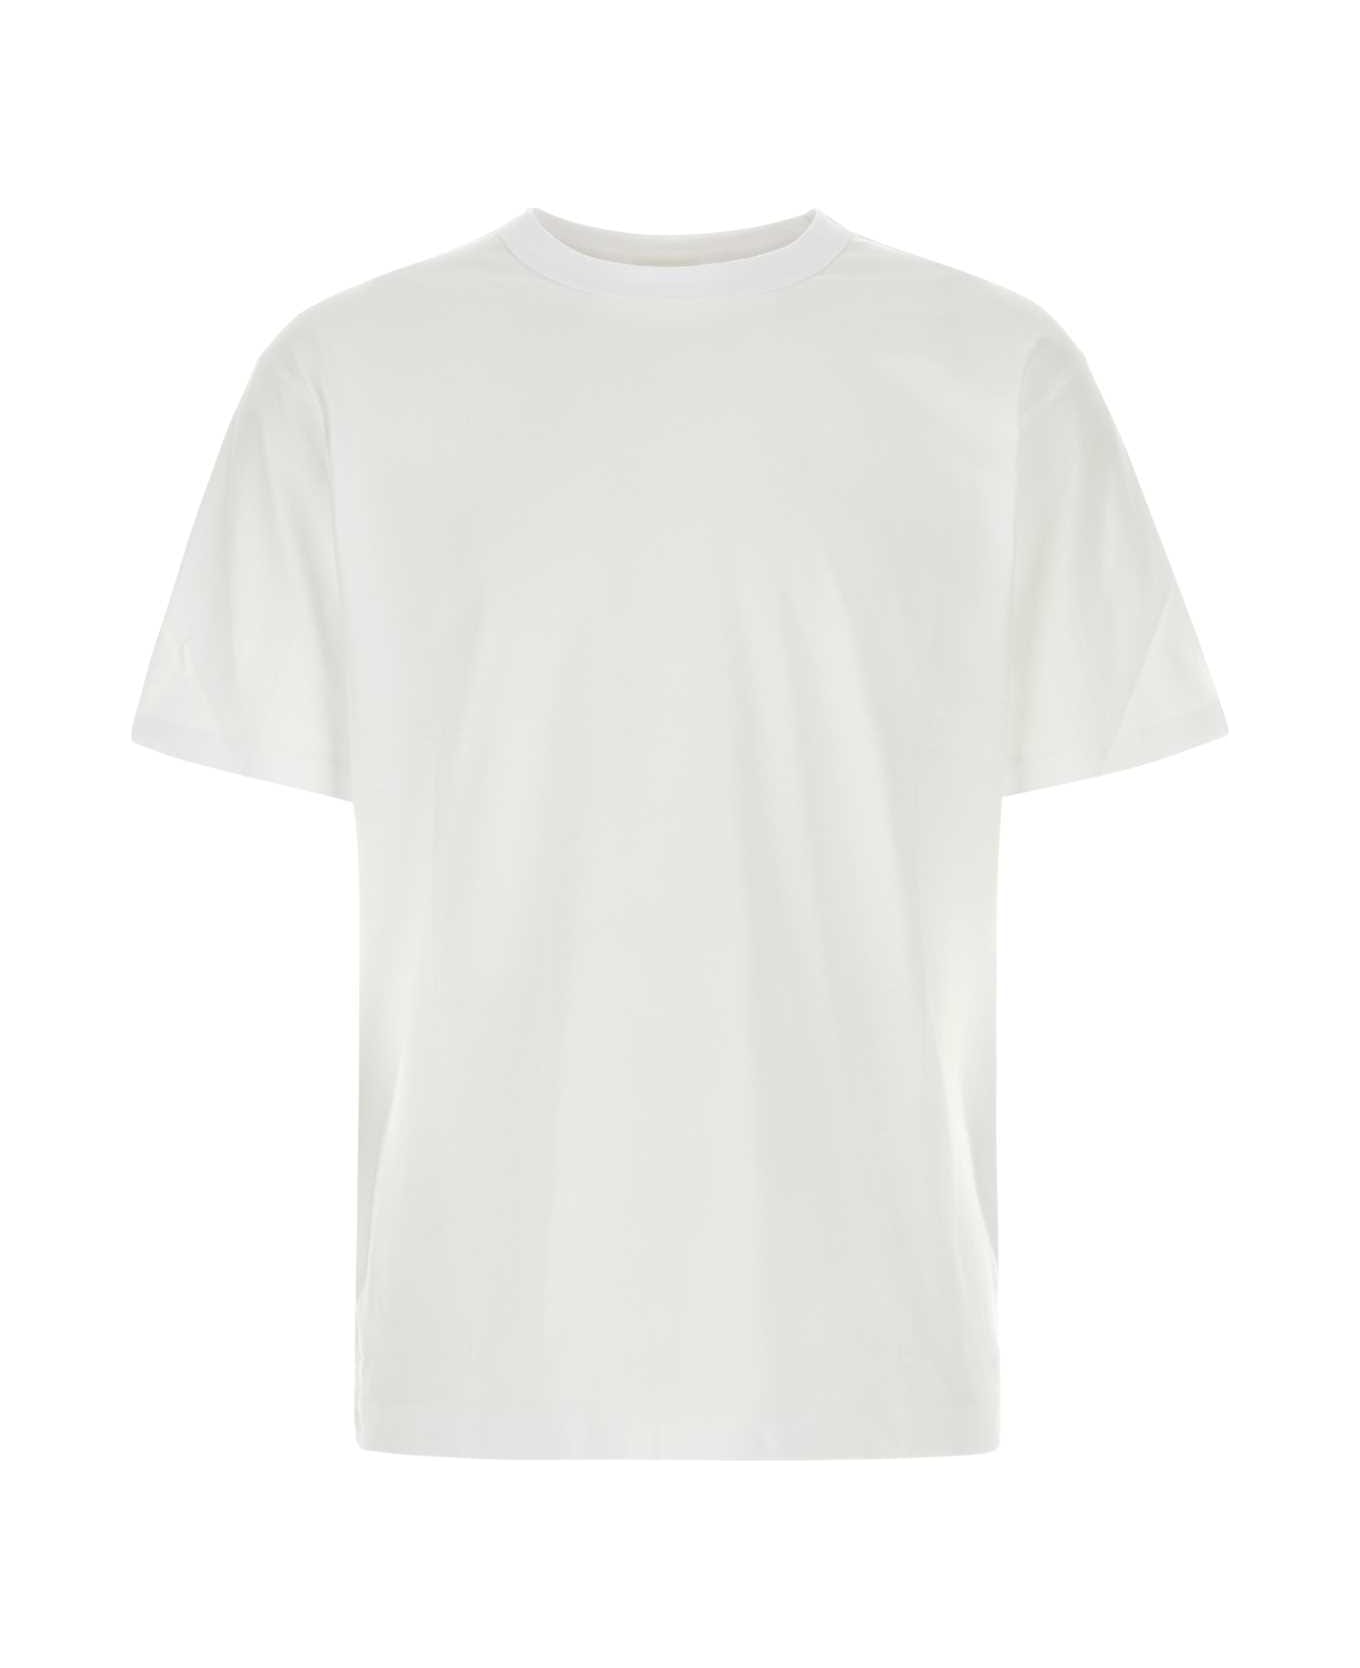 Dries Van Noten White Cotton Heer T-shirt - White